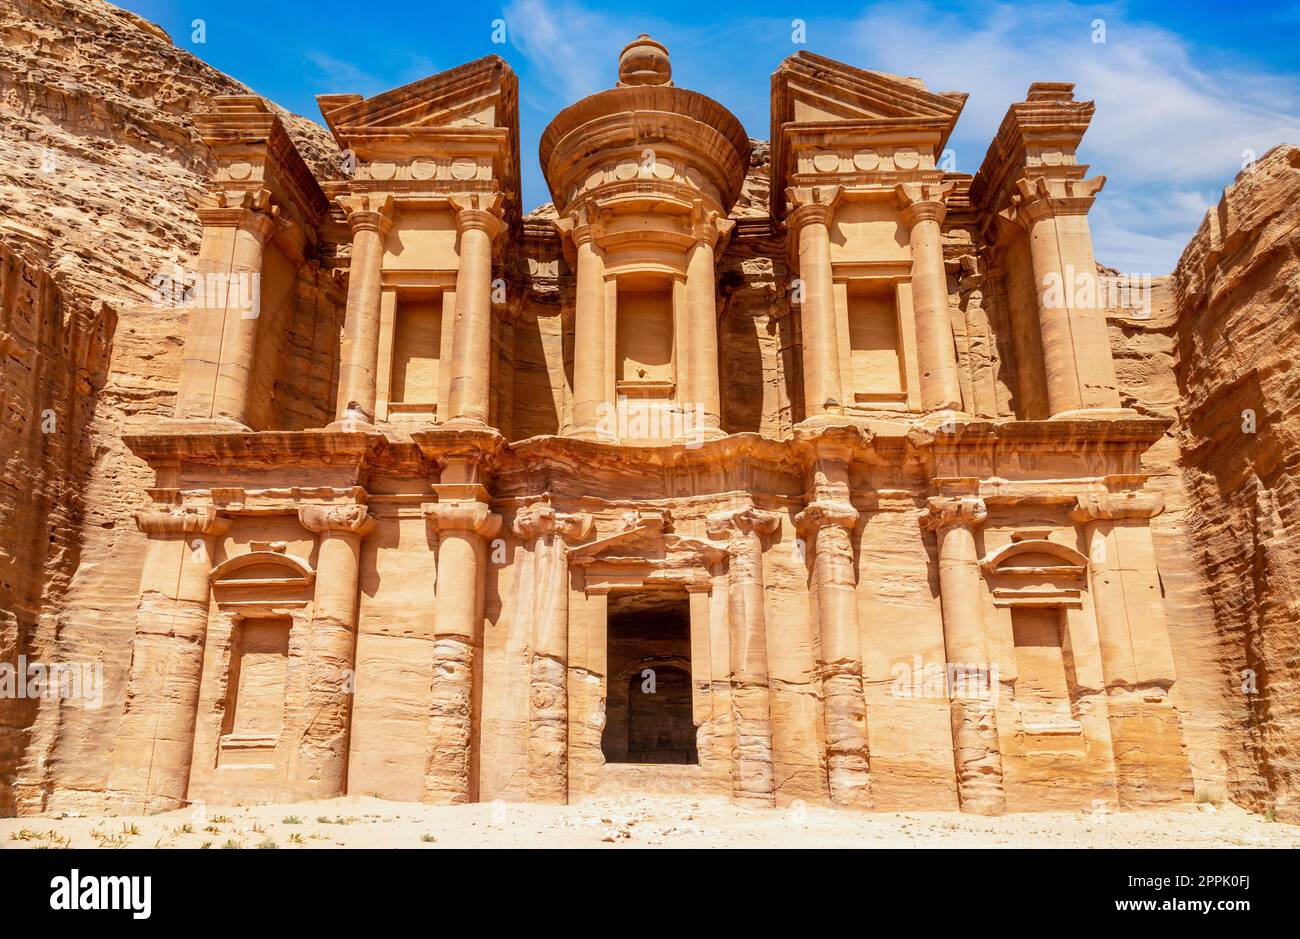 Ad Deir ou le Monastère, ancien temple en pierre taillé Nabatéen, Pétra, Jordanie Banque D'Images